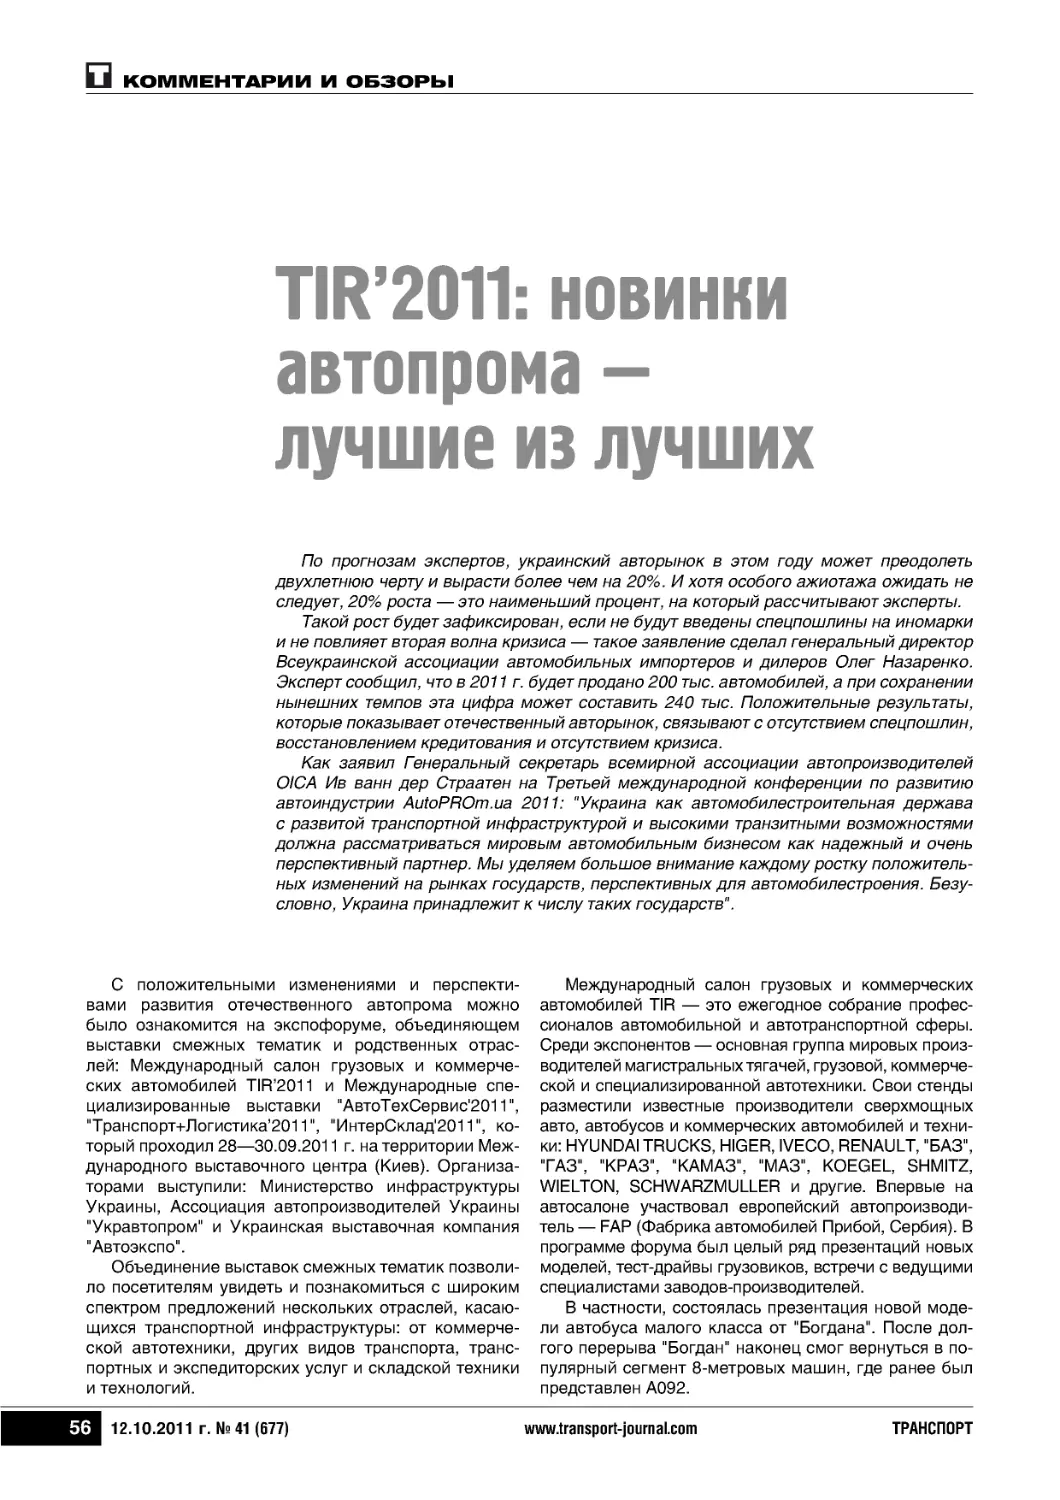 TIR’2011: новинкиавтопрома —лучшие из лучших